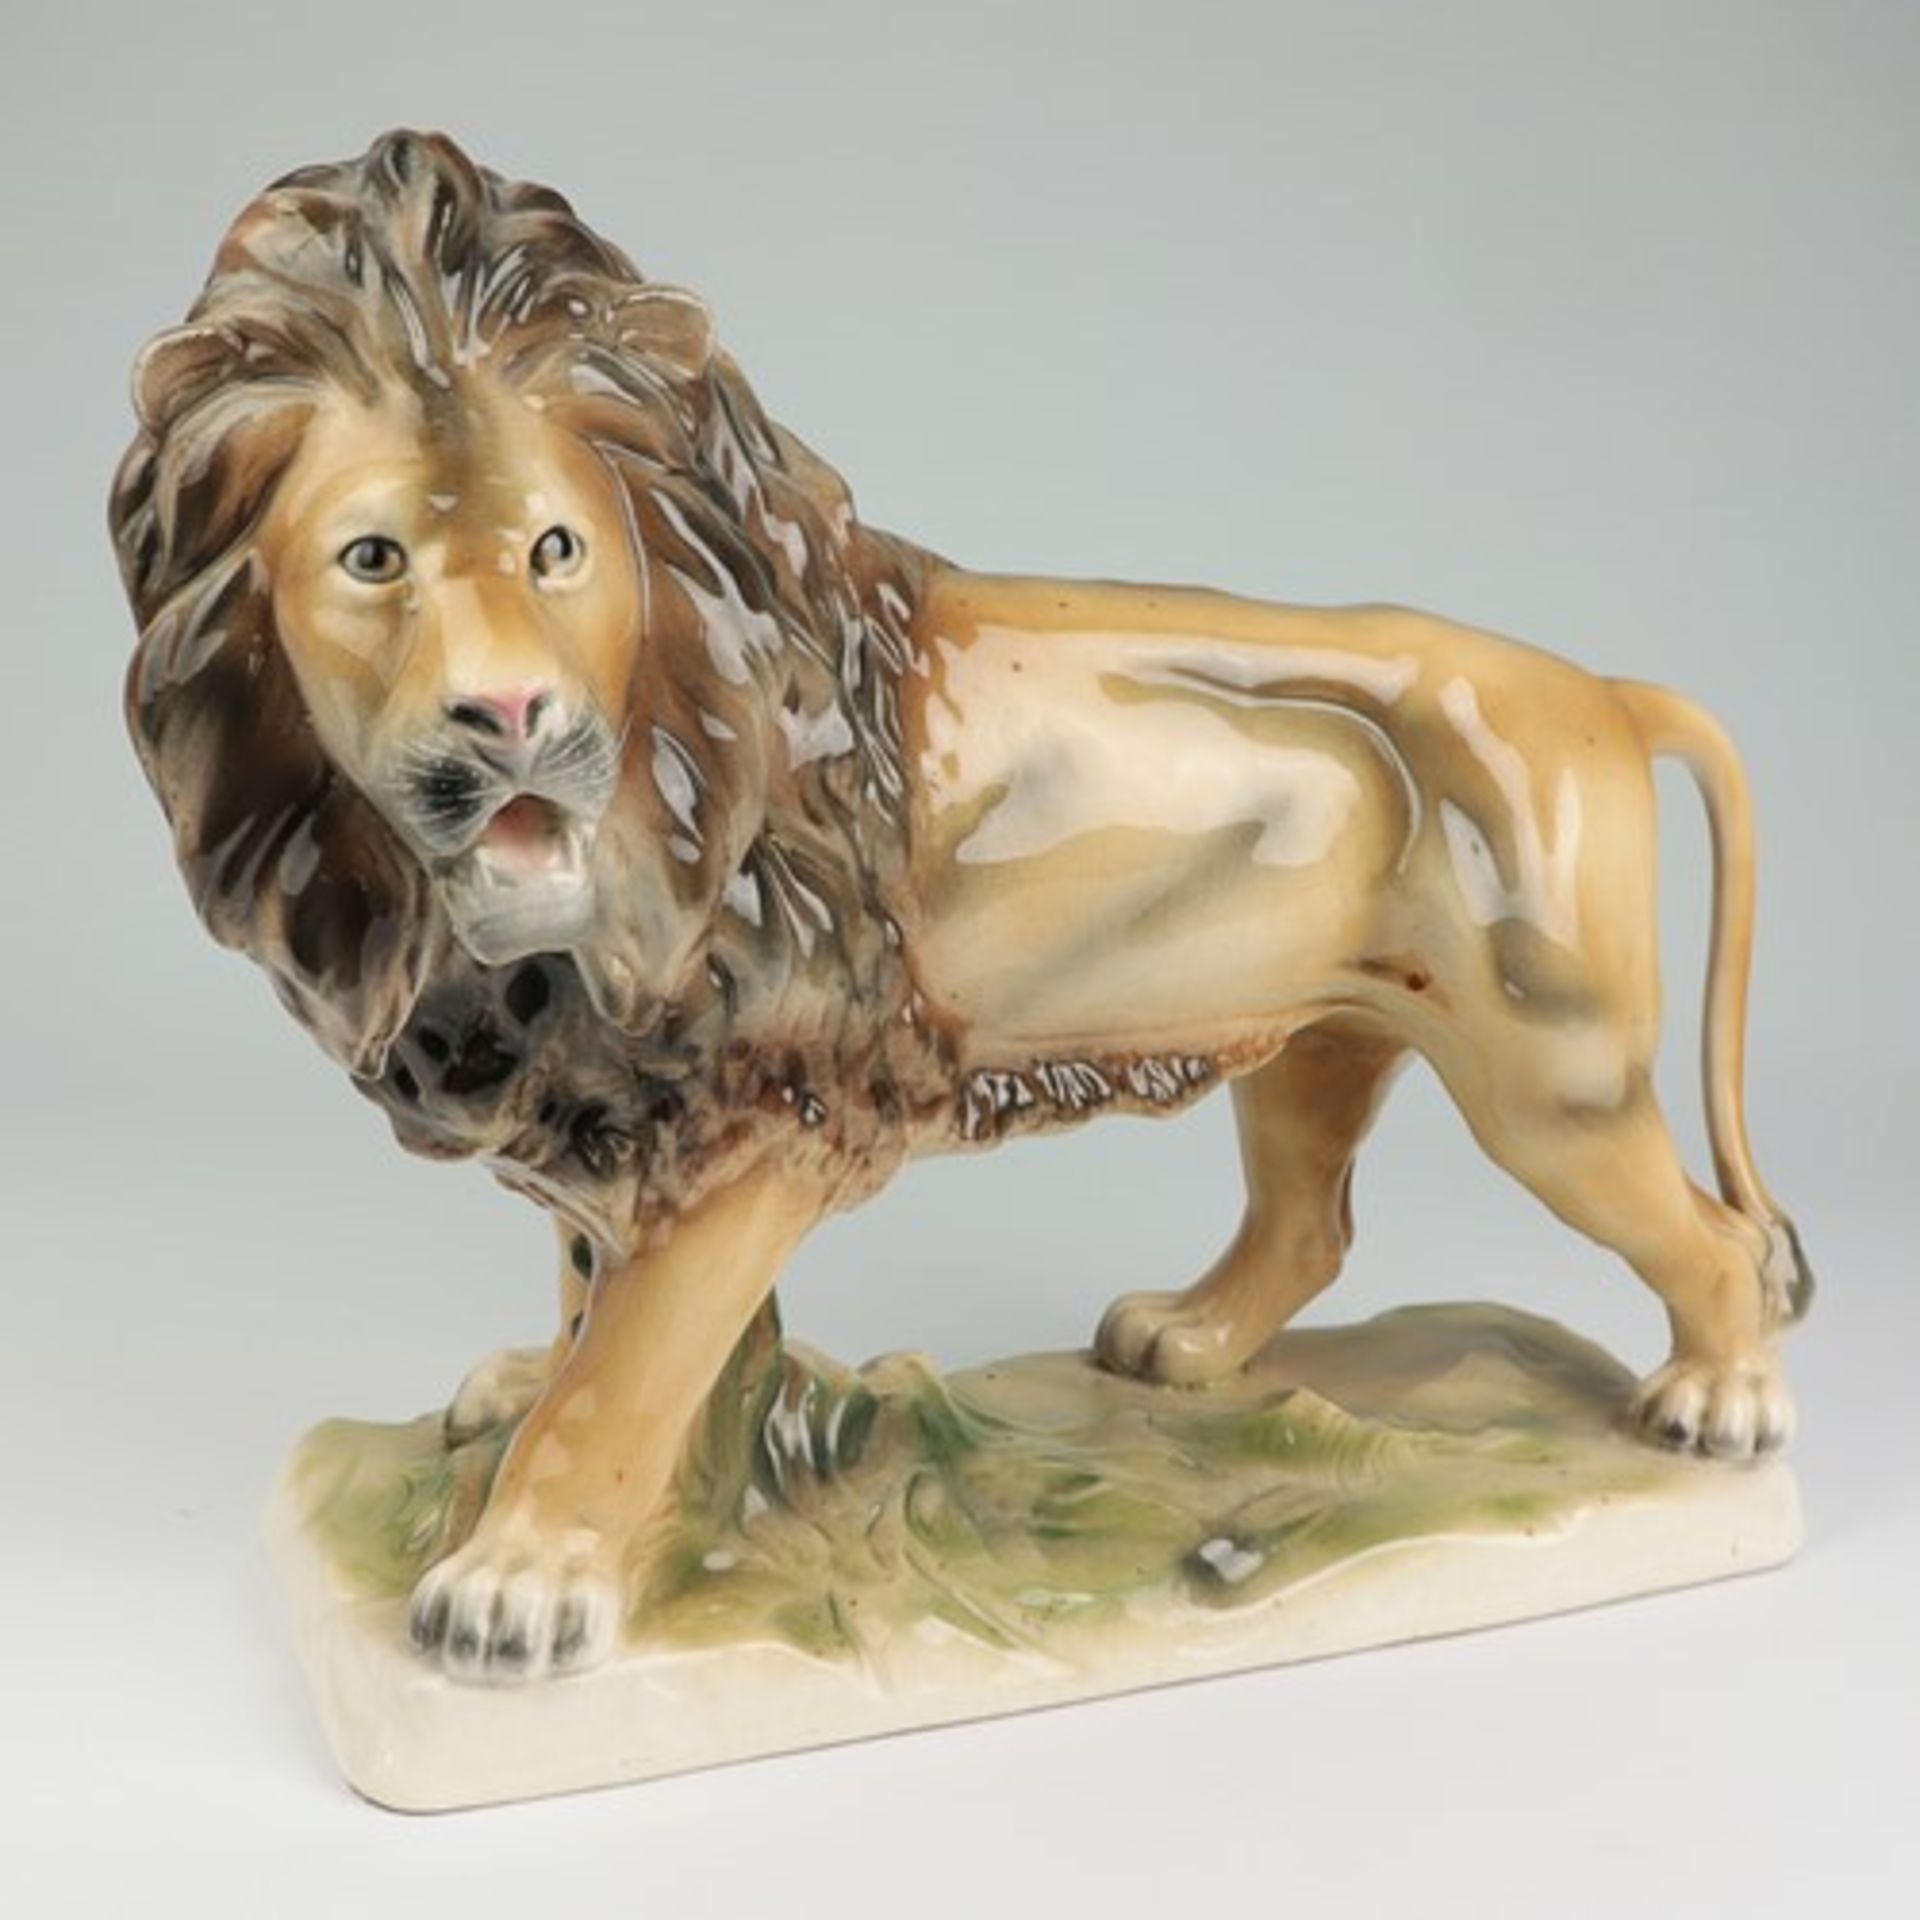 Sitzendorf - FigurStempelmarke, Steingut, vollplast. Figur eines schreitenden Löwen auf